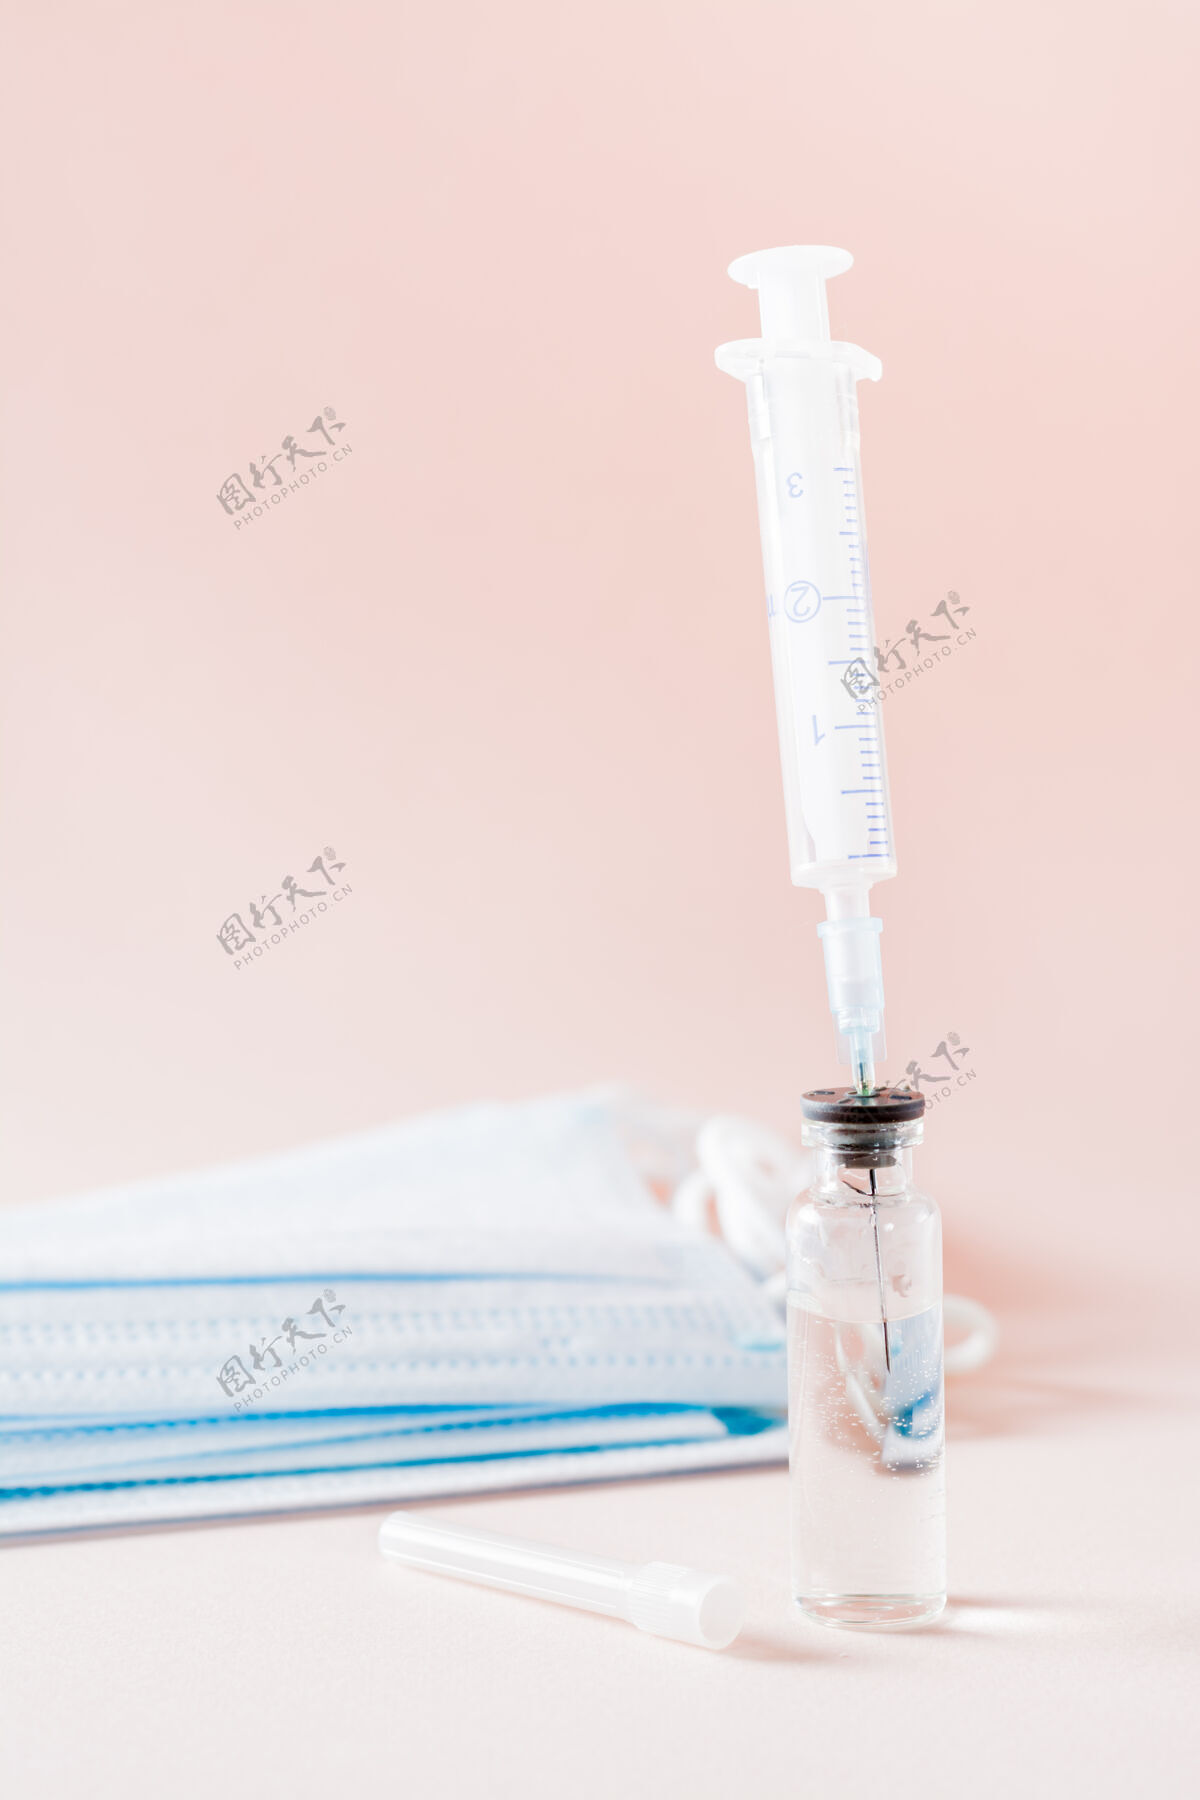 玻璃疫苗接种和注射器针头插入玻璃疫苗瓶和面部垂直遮罩查看治疗实验室药物